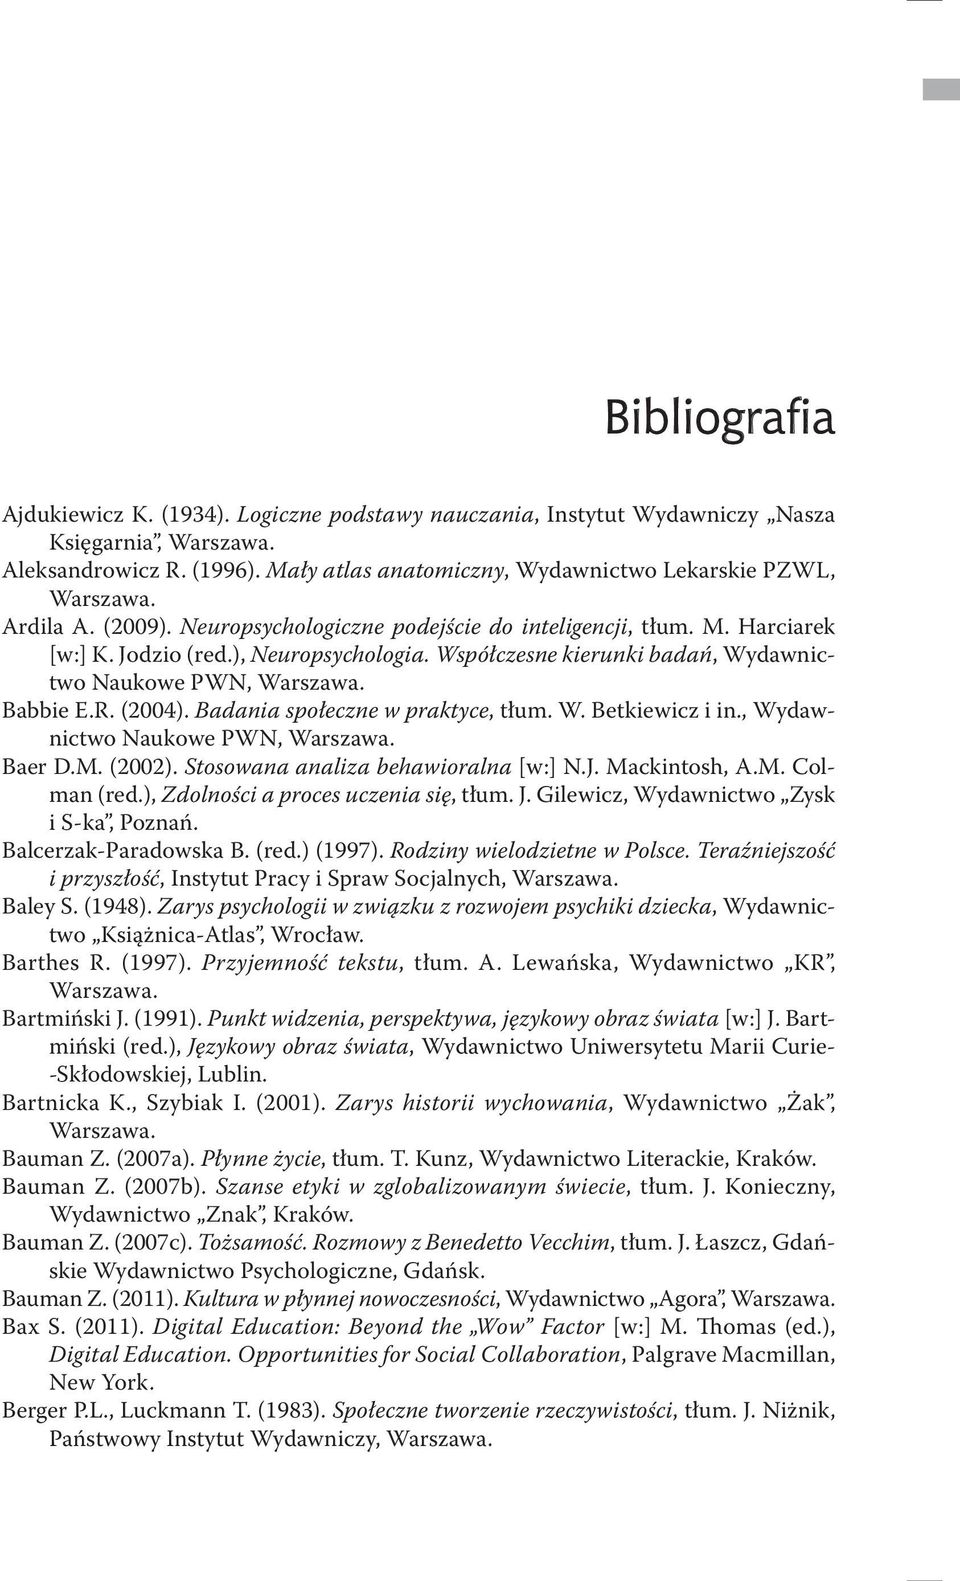 Badania społeczne w praktyce, tłum. W. Betkiewicz i in., Wydawnictwo Naukowe PWN, Baer D.M. (2002). Stosowana analiza behawioralna [w:] N.J. Mackintosh, A.M. Colman (red.